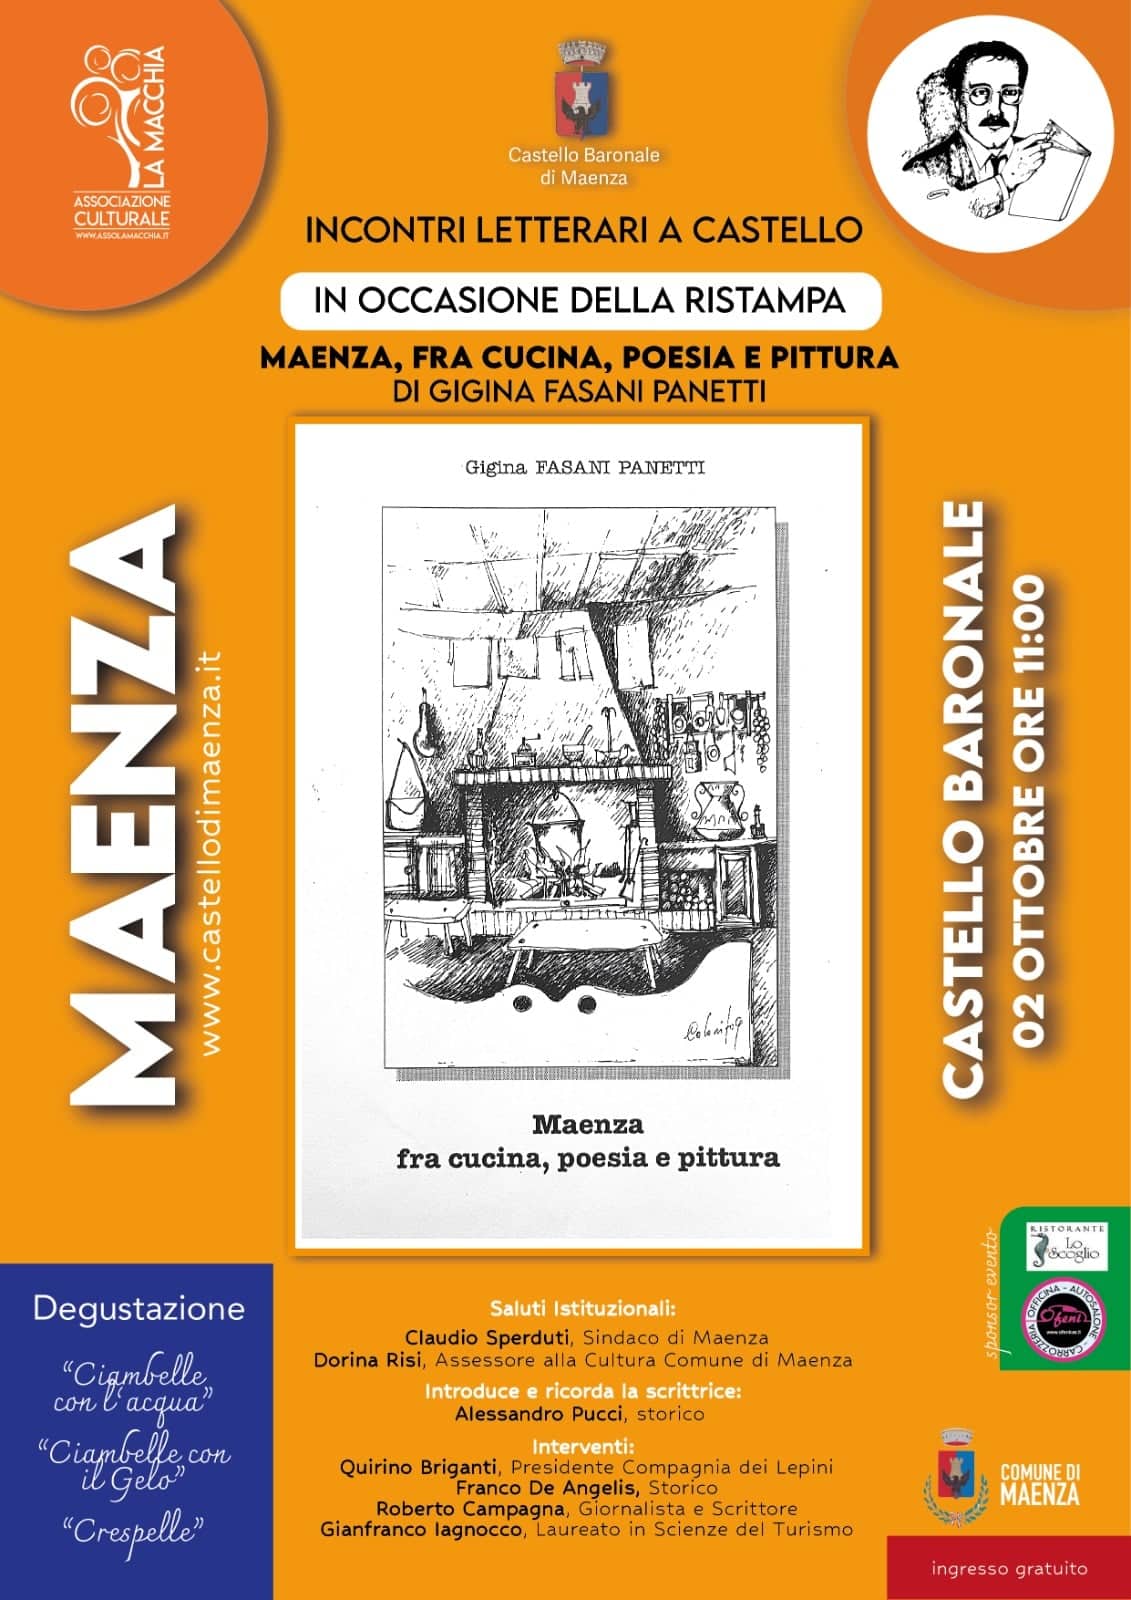 Maenza fra cucina, Poesia e pittura: presentazione del libro di Gigina Fasani Panetti @ Castello Baronale Maenza